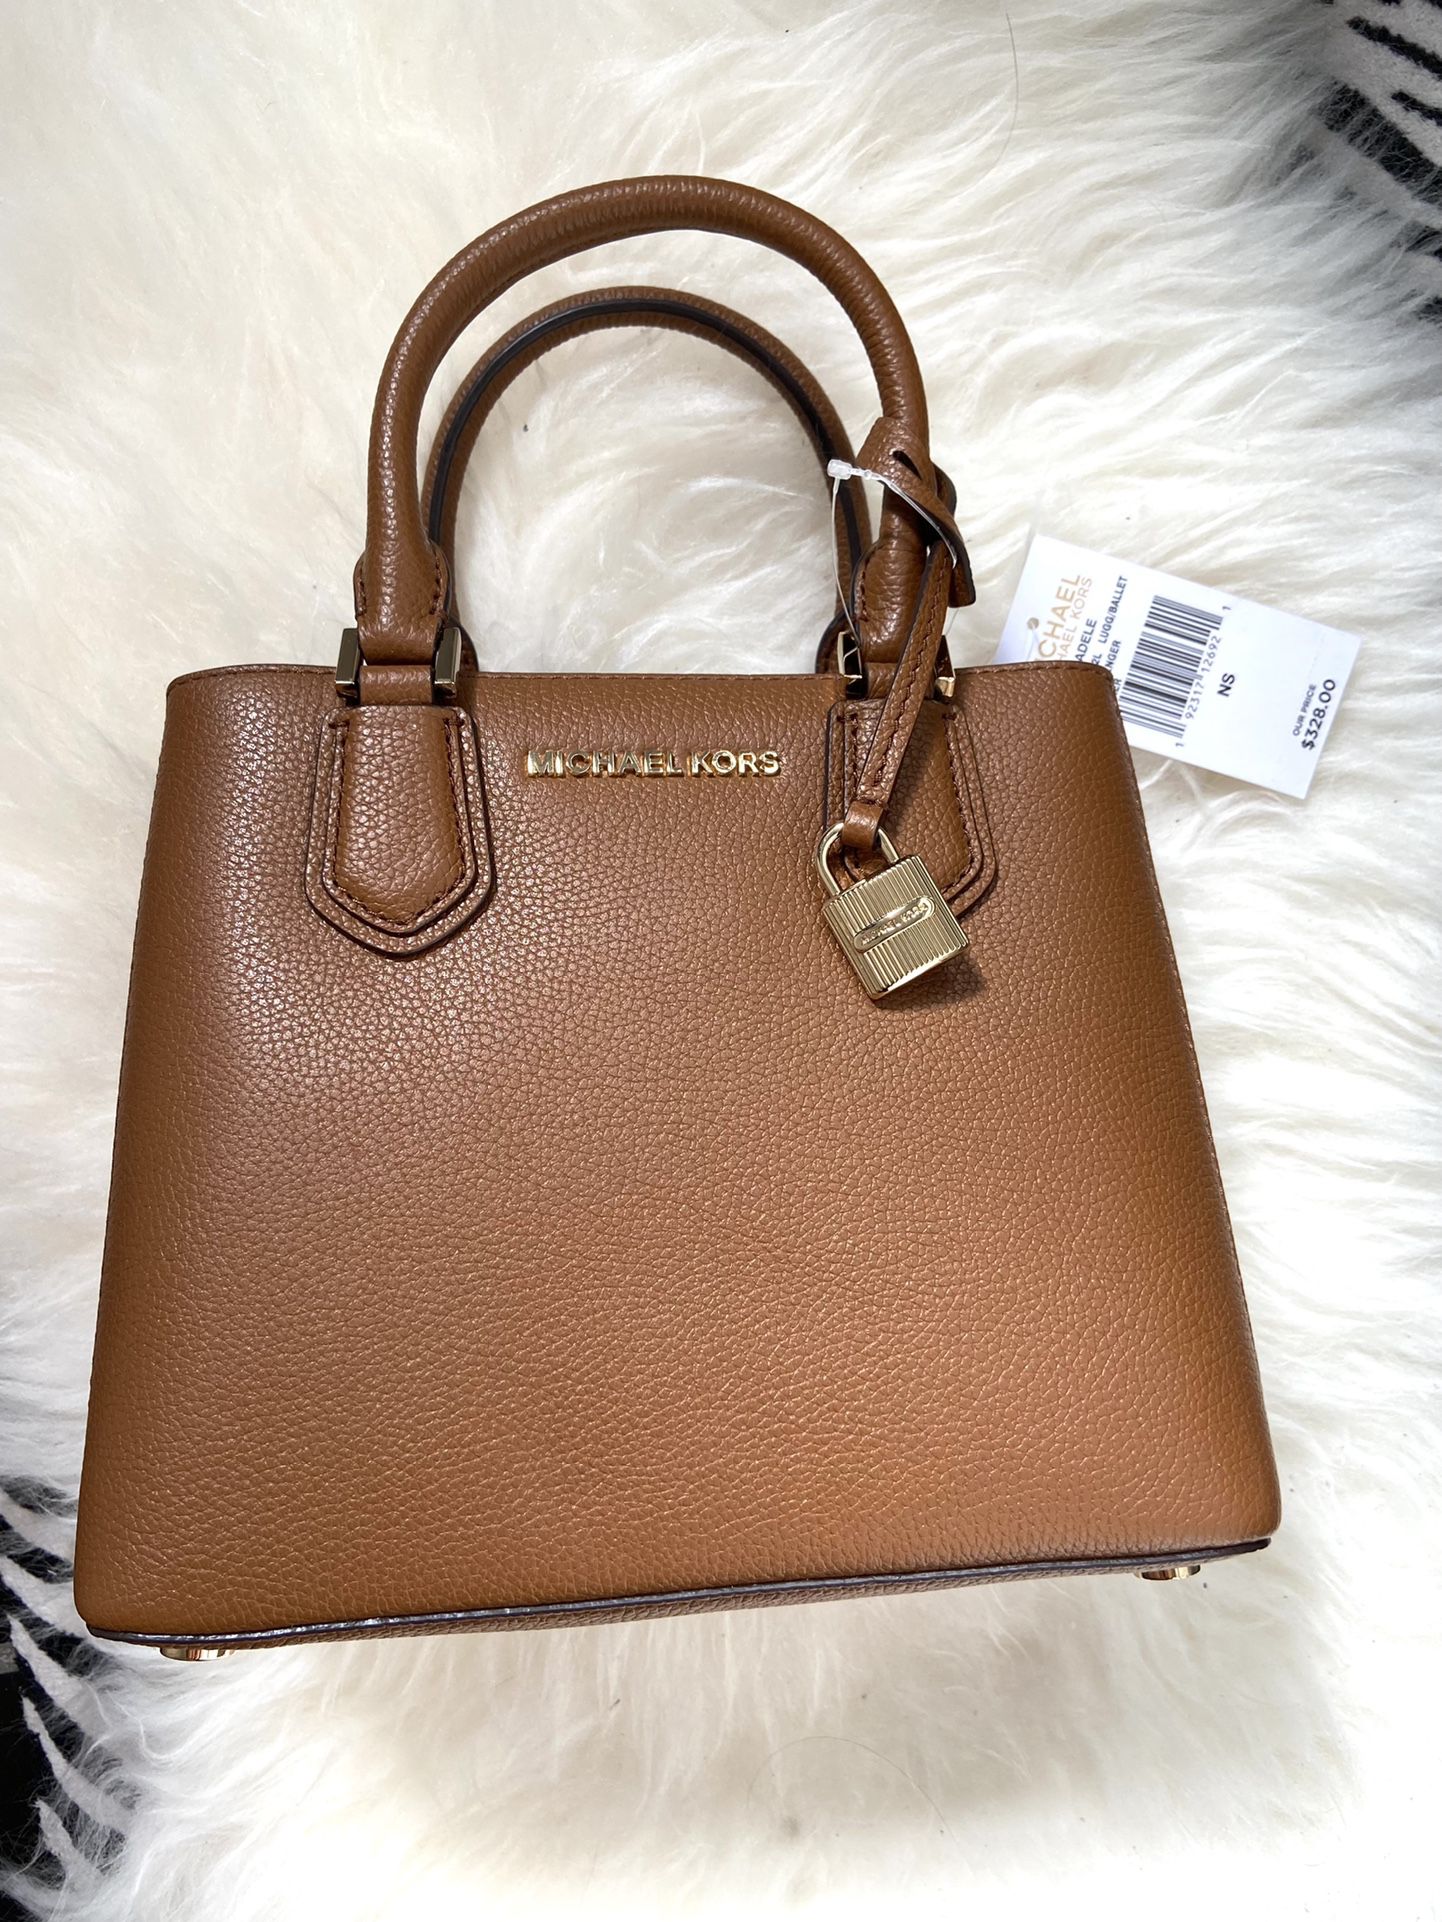 Michael Kors small leather brown handbag crossbody